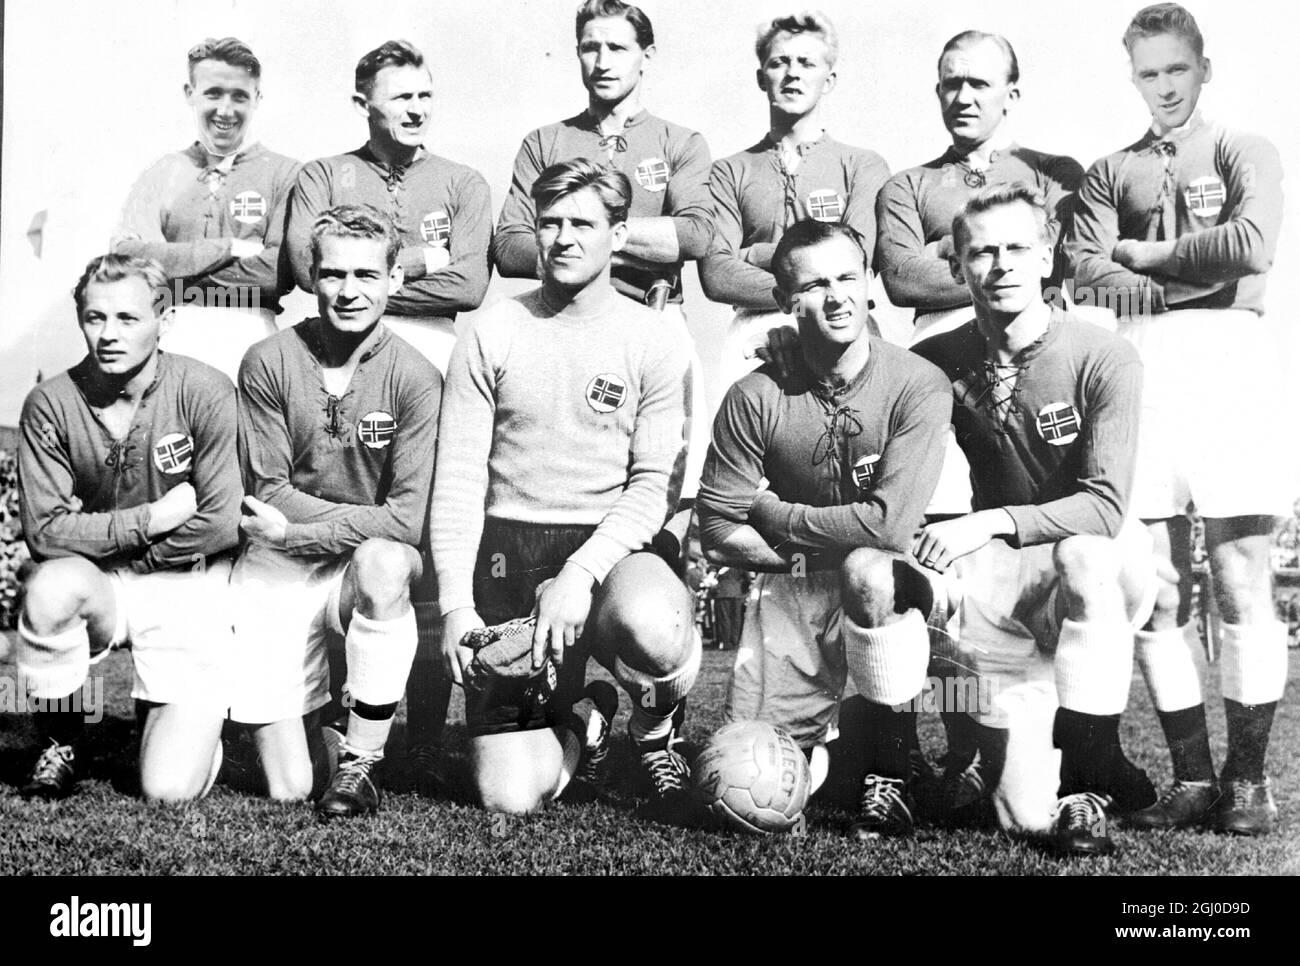 Das norwegische Team wird am 5. Mai 1954 im Hampden Park in Glasgow Schottland spielen. Hintere Reihe, W.Fossli, G. Thoresen, T. Svenssen, G. Dybwad, H. Nordahl und A. Kotte. Erste Reihe, T. Olsen, O. Hansen, A. Hansesn, H. Karlsen und T. Hernes. Stockfoto